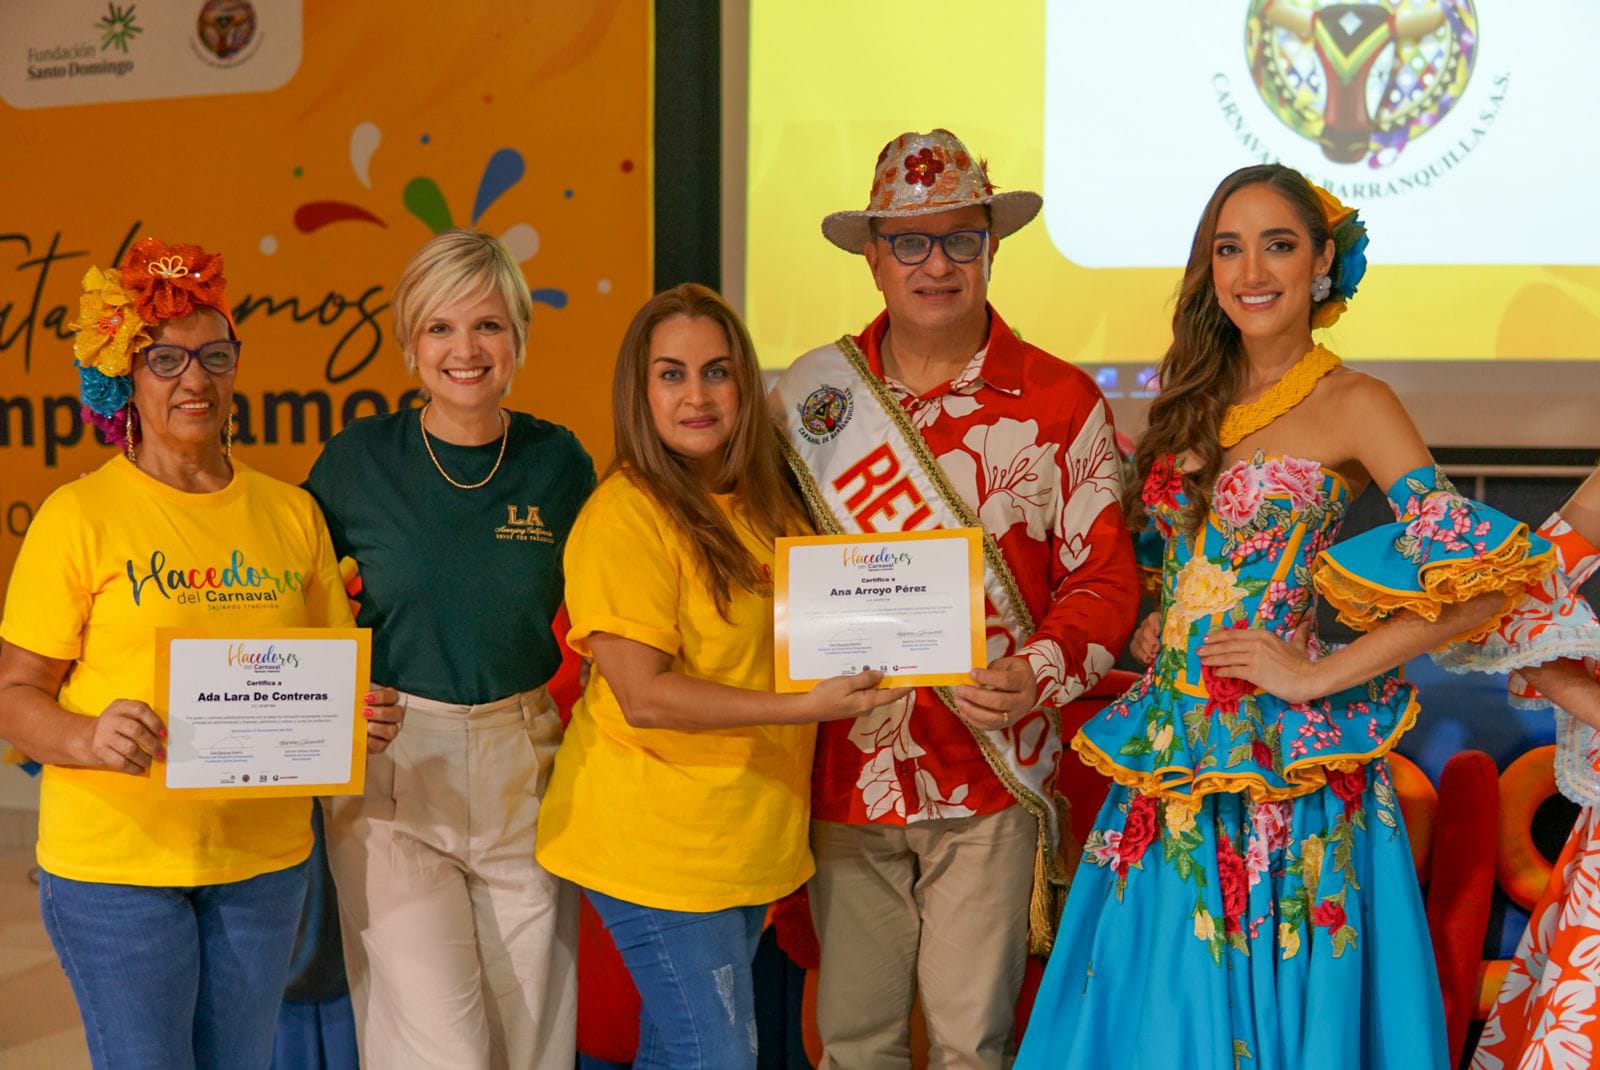 150 Hacedores del Carnaval fueron formados para seguir Tejiendo Tradición en Barranquilla